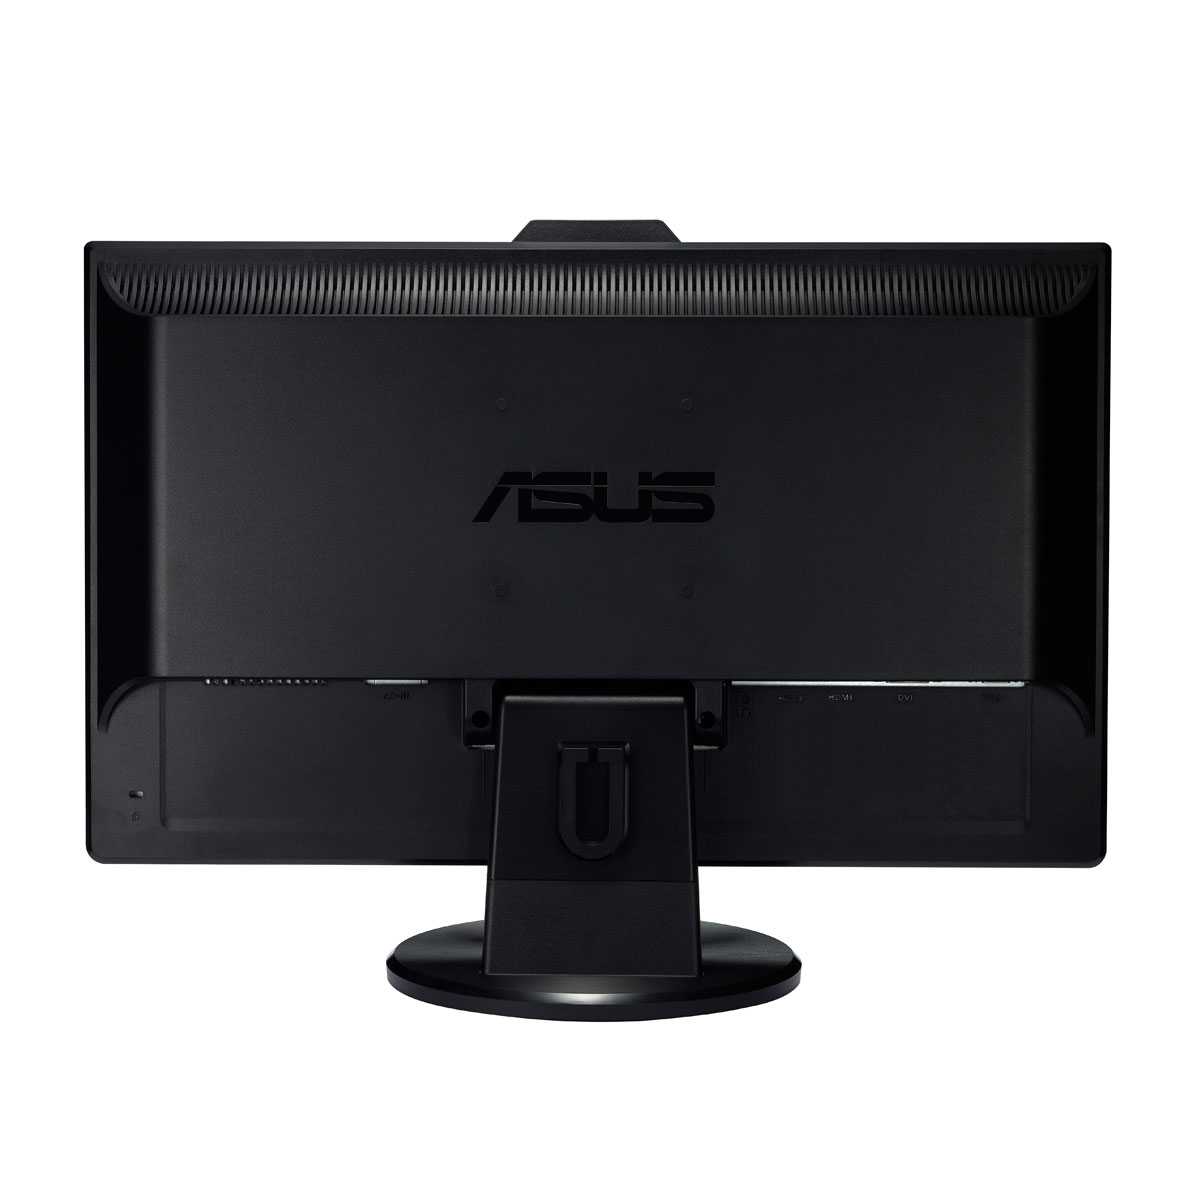 Asus vk248h (черный) - купить , скидки, цена, отзывы, обзор, характеристики - мониторы